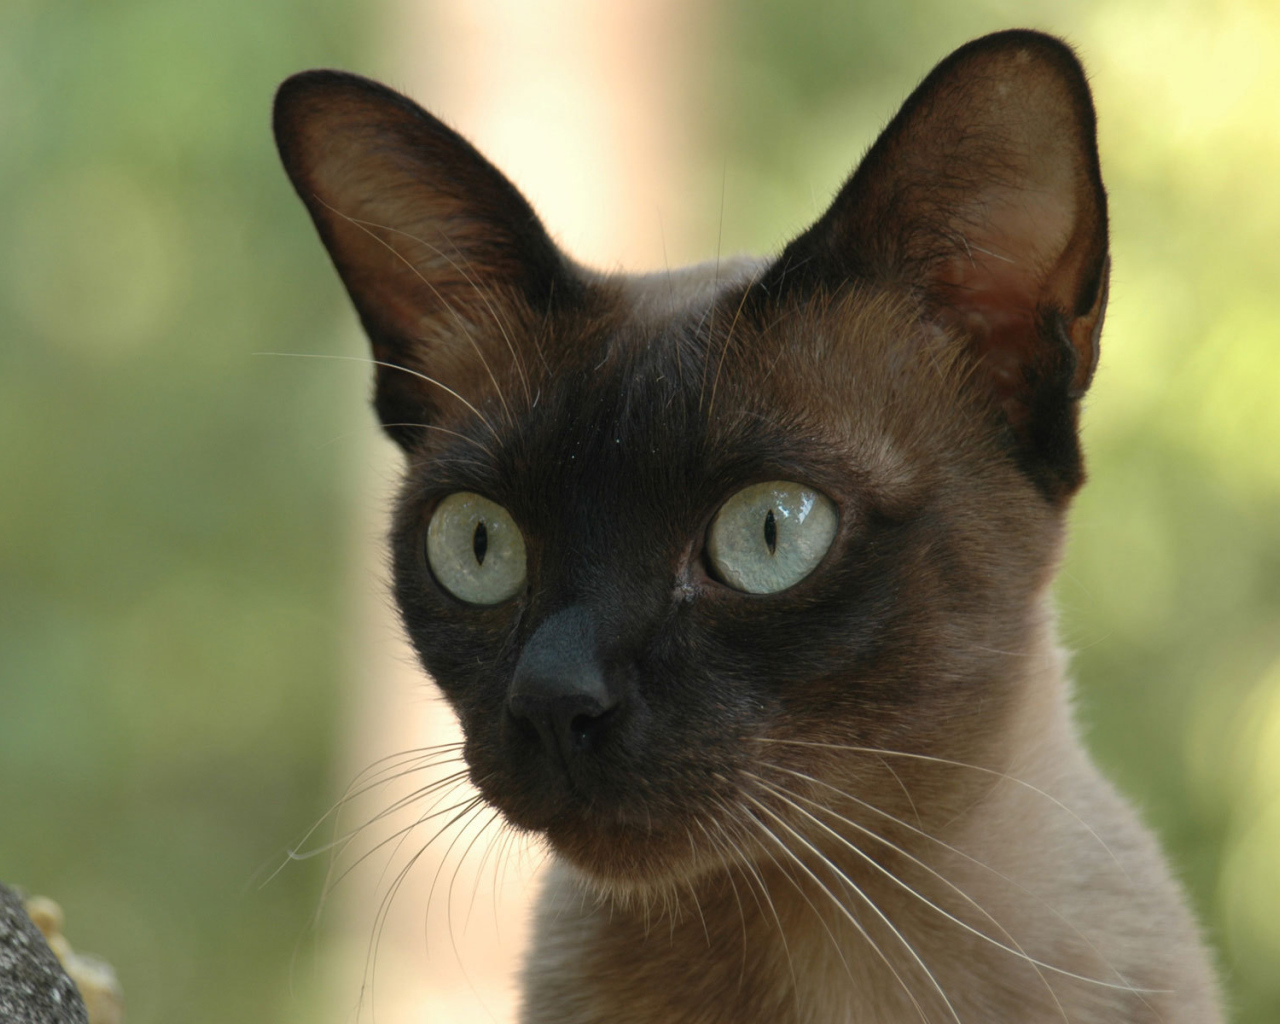 Молодой  сиамский кот со включенным охотничьим режимом